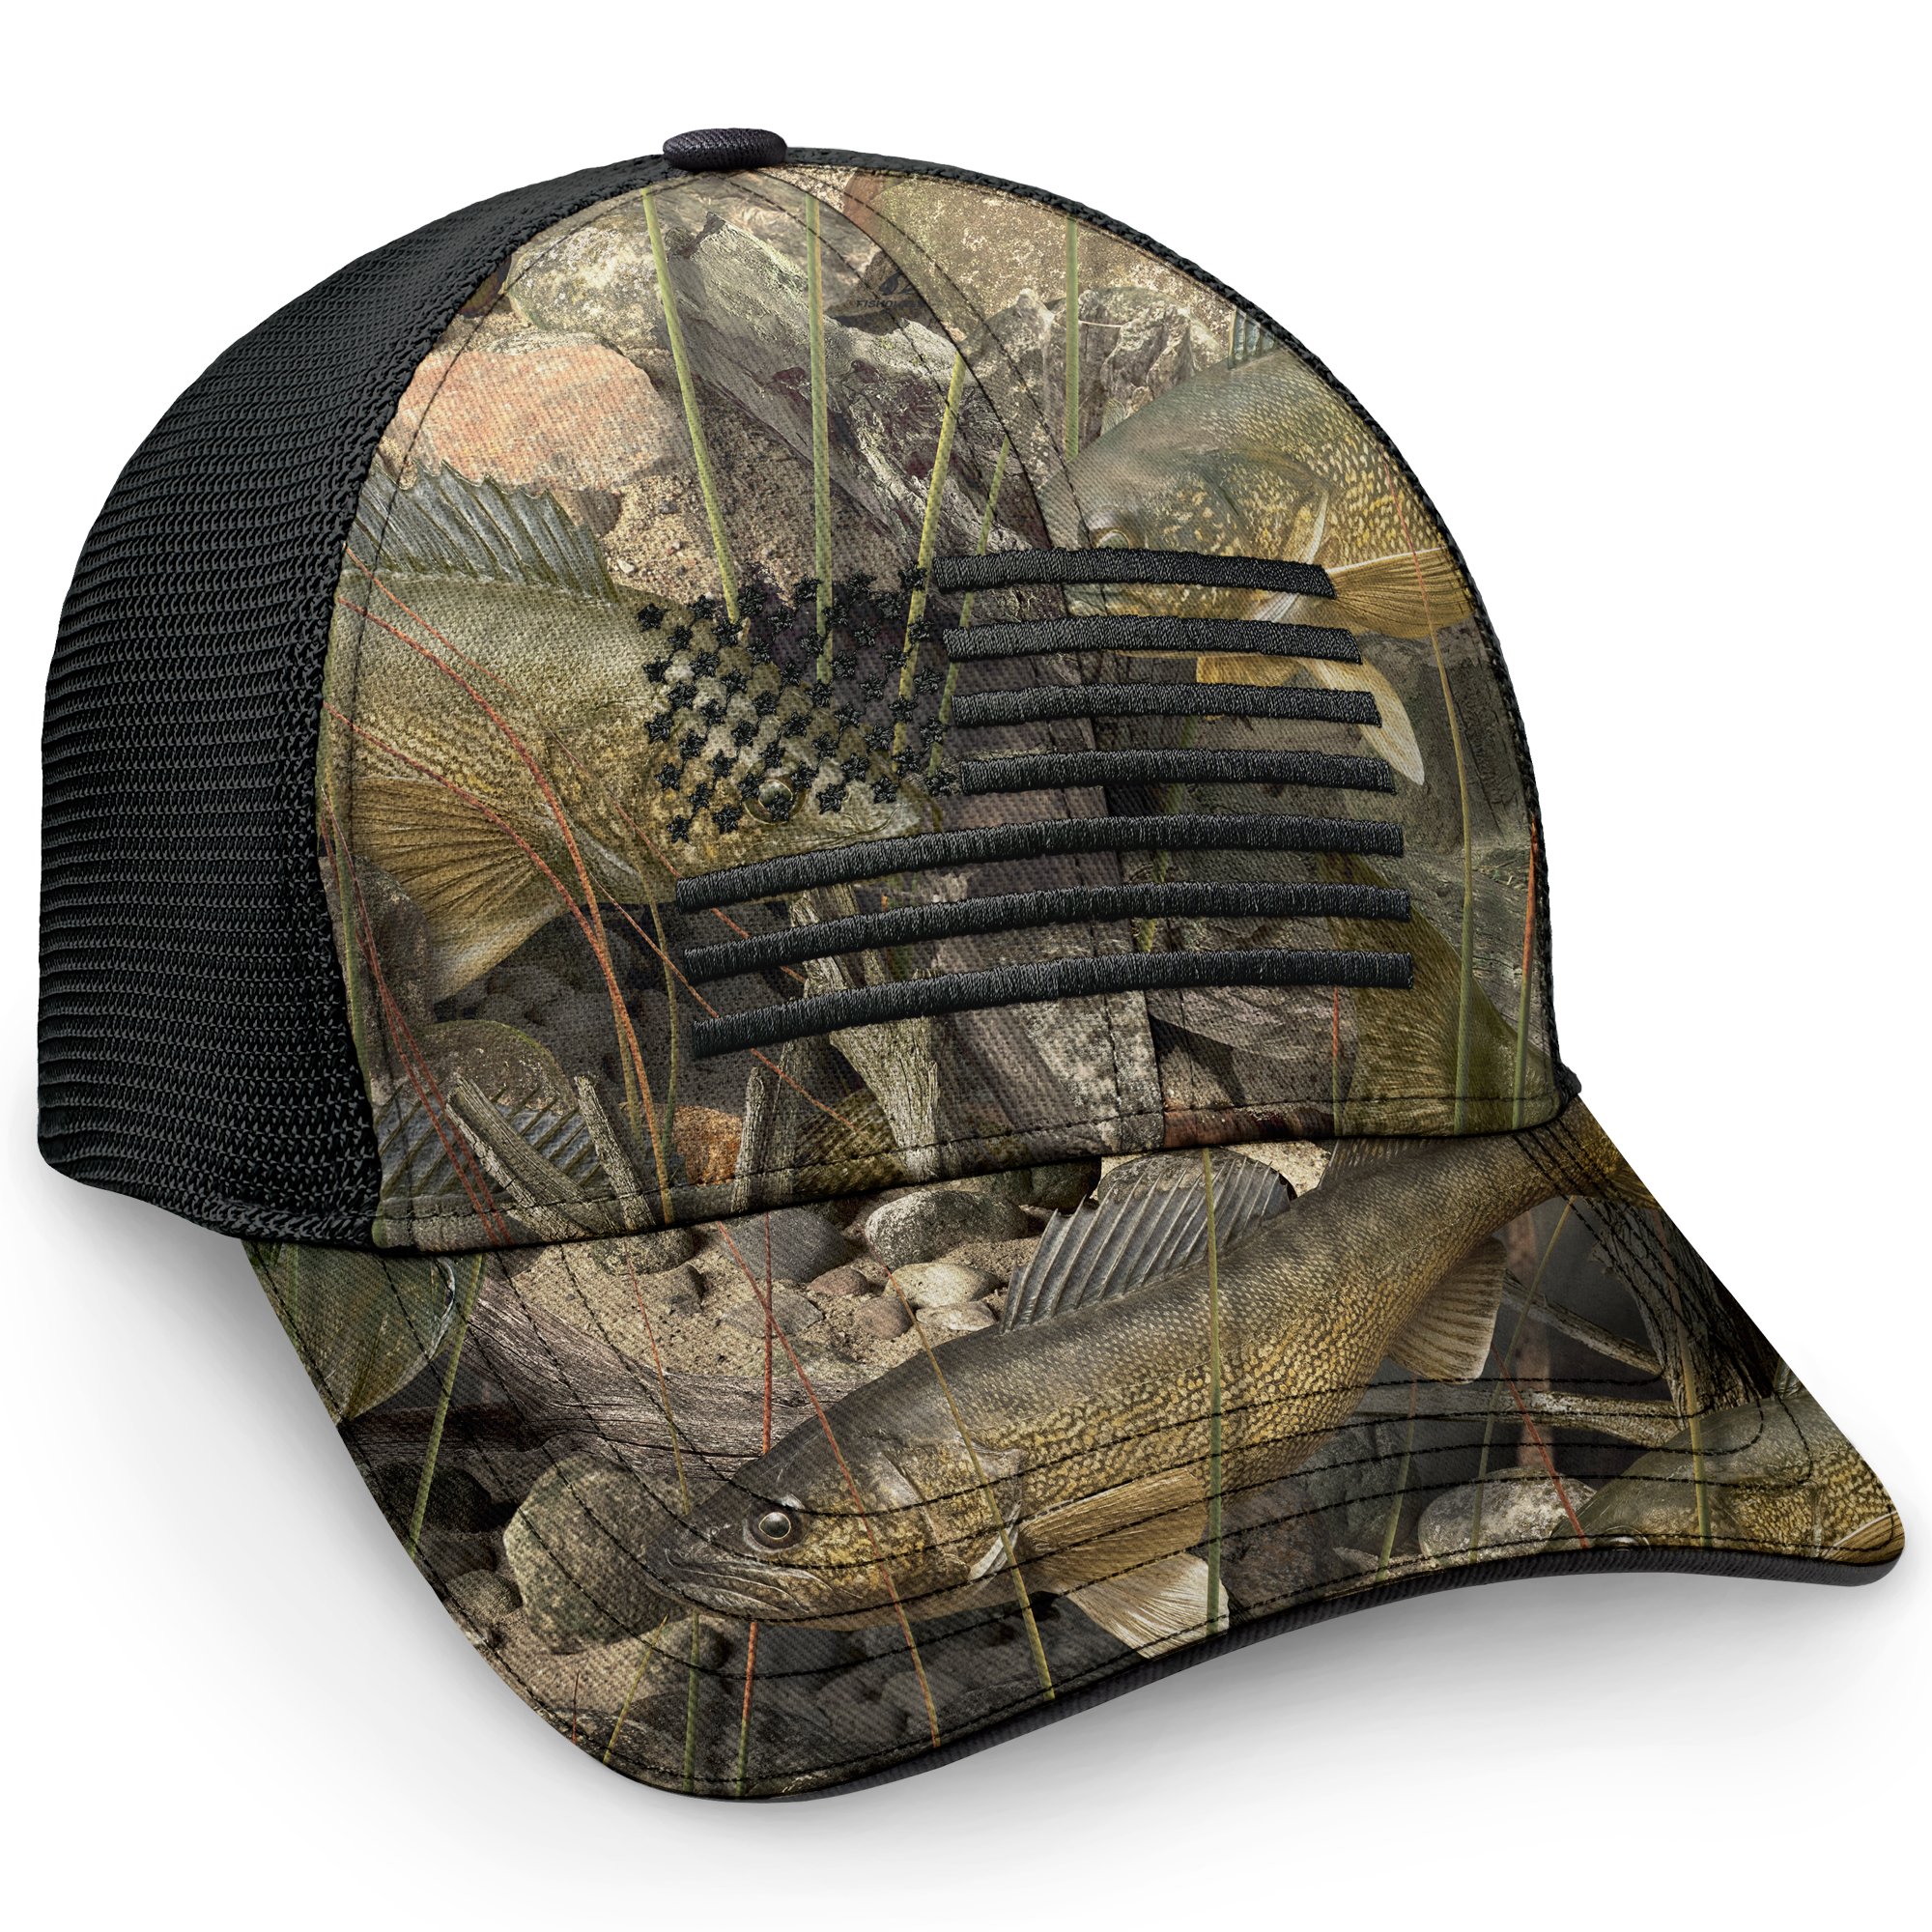 Walleye Trucker Hat, Men's Mesh Back Fishing Cap